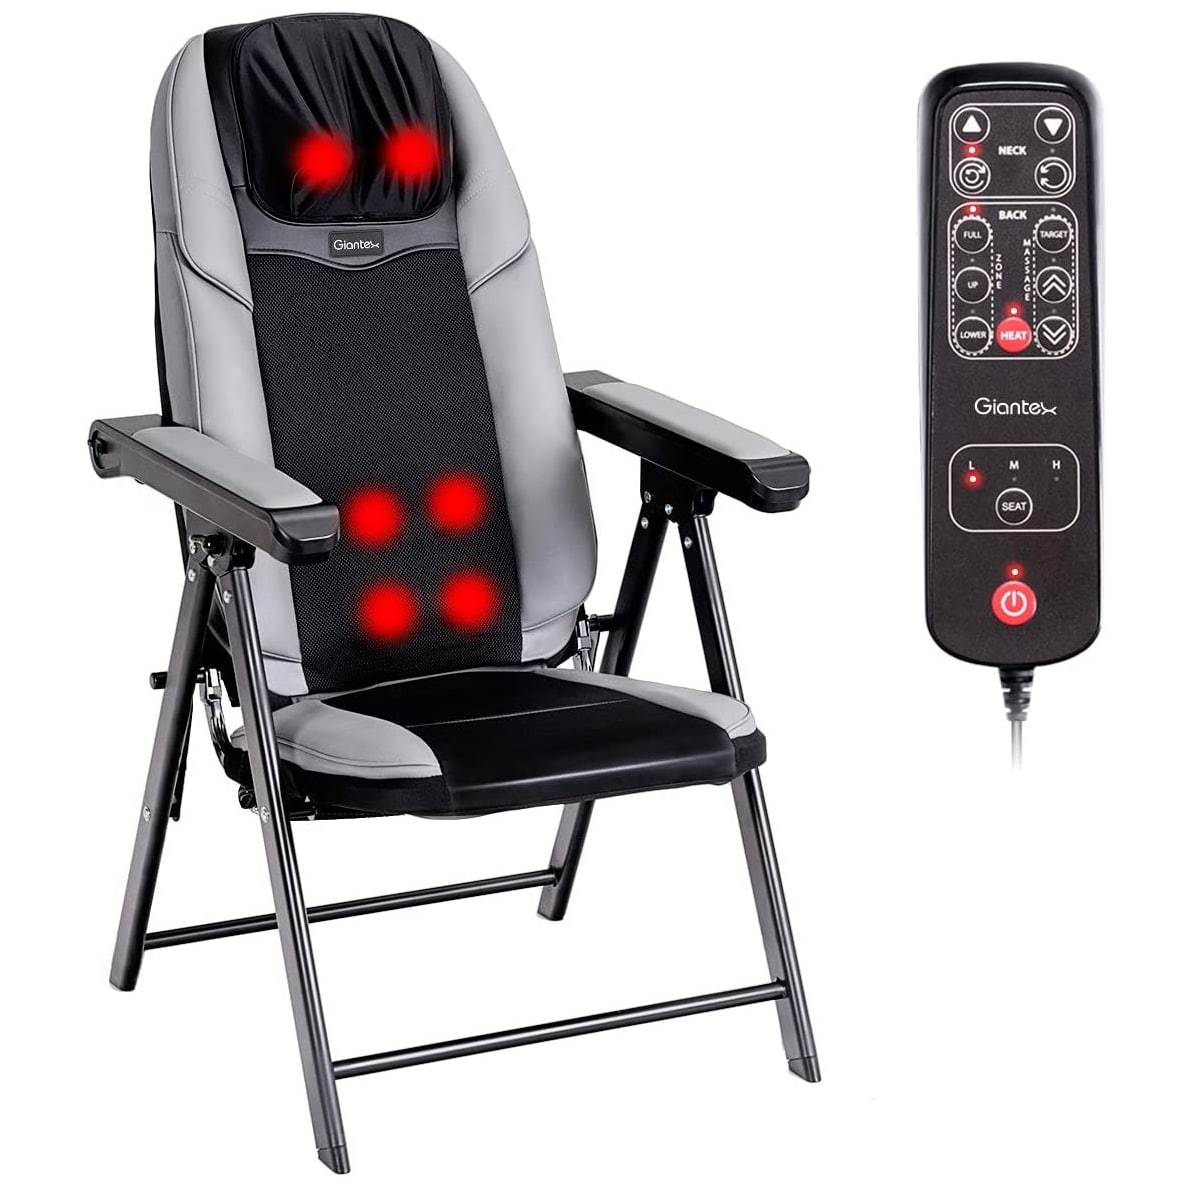 Giantex Folding Shiatsu Massage Chair